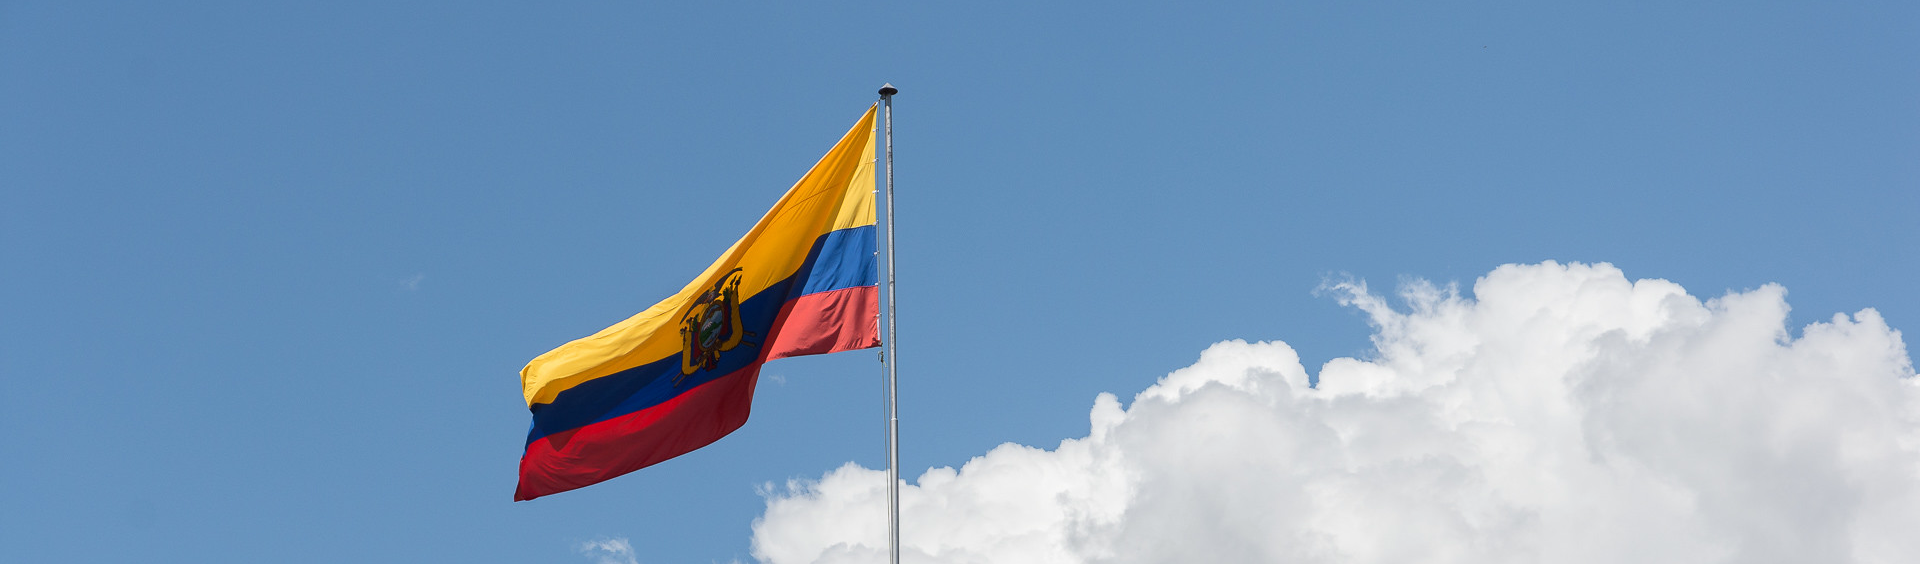 Mercado usa eleições para assaltar Previdência no Equador, denuncia ex-ministra